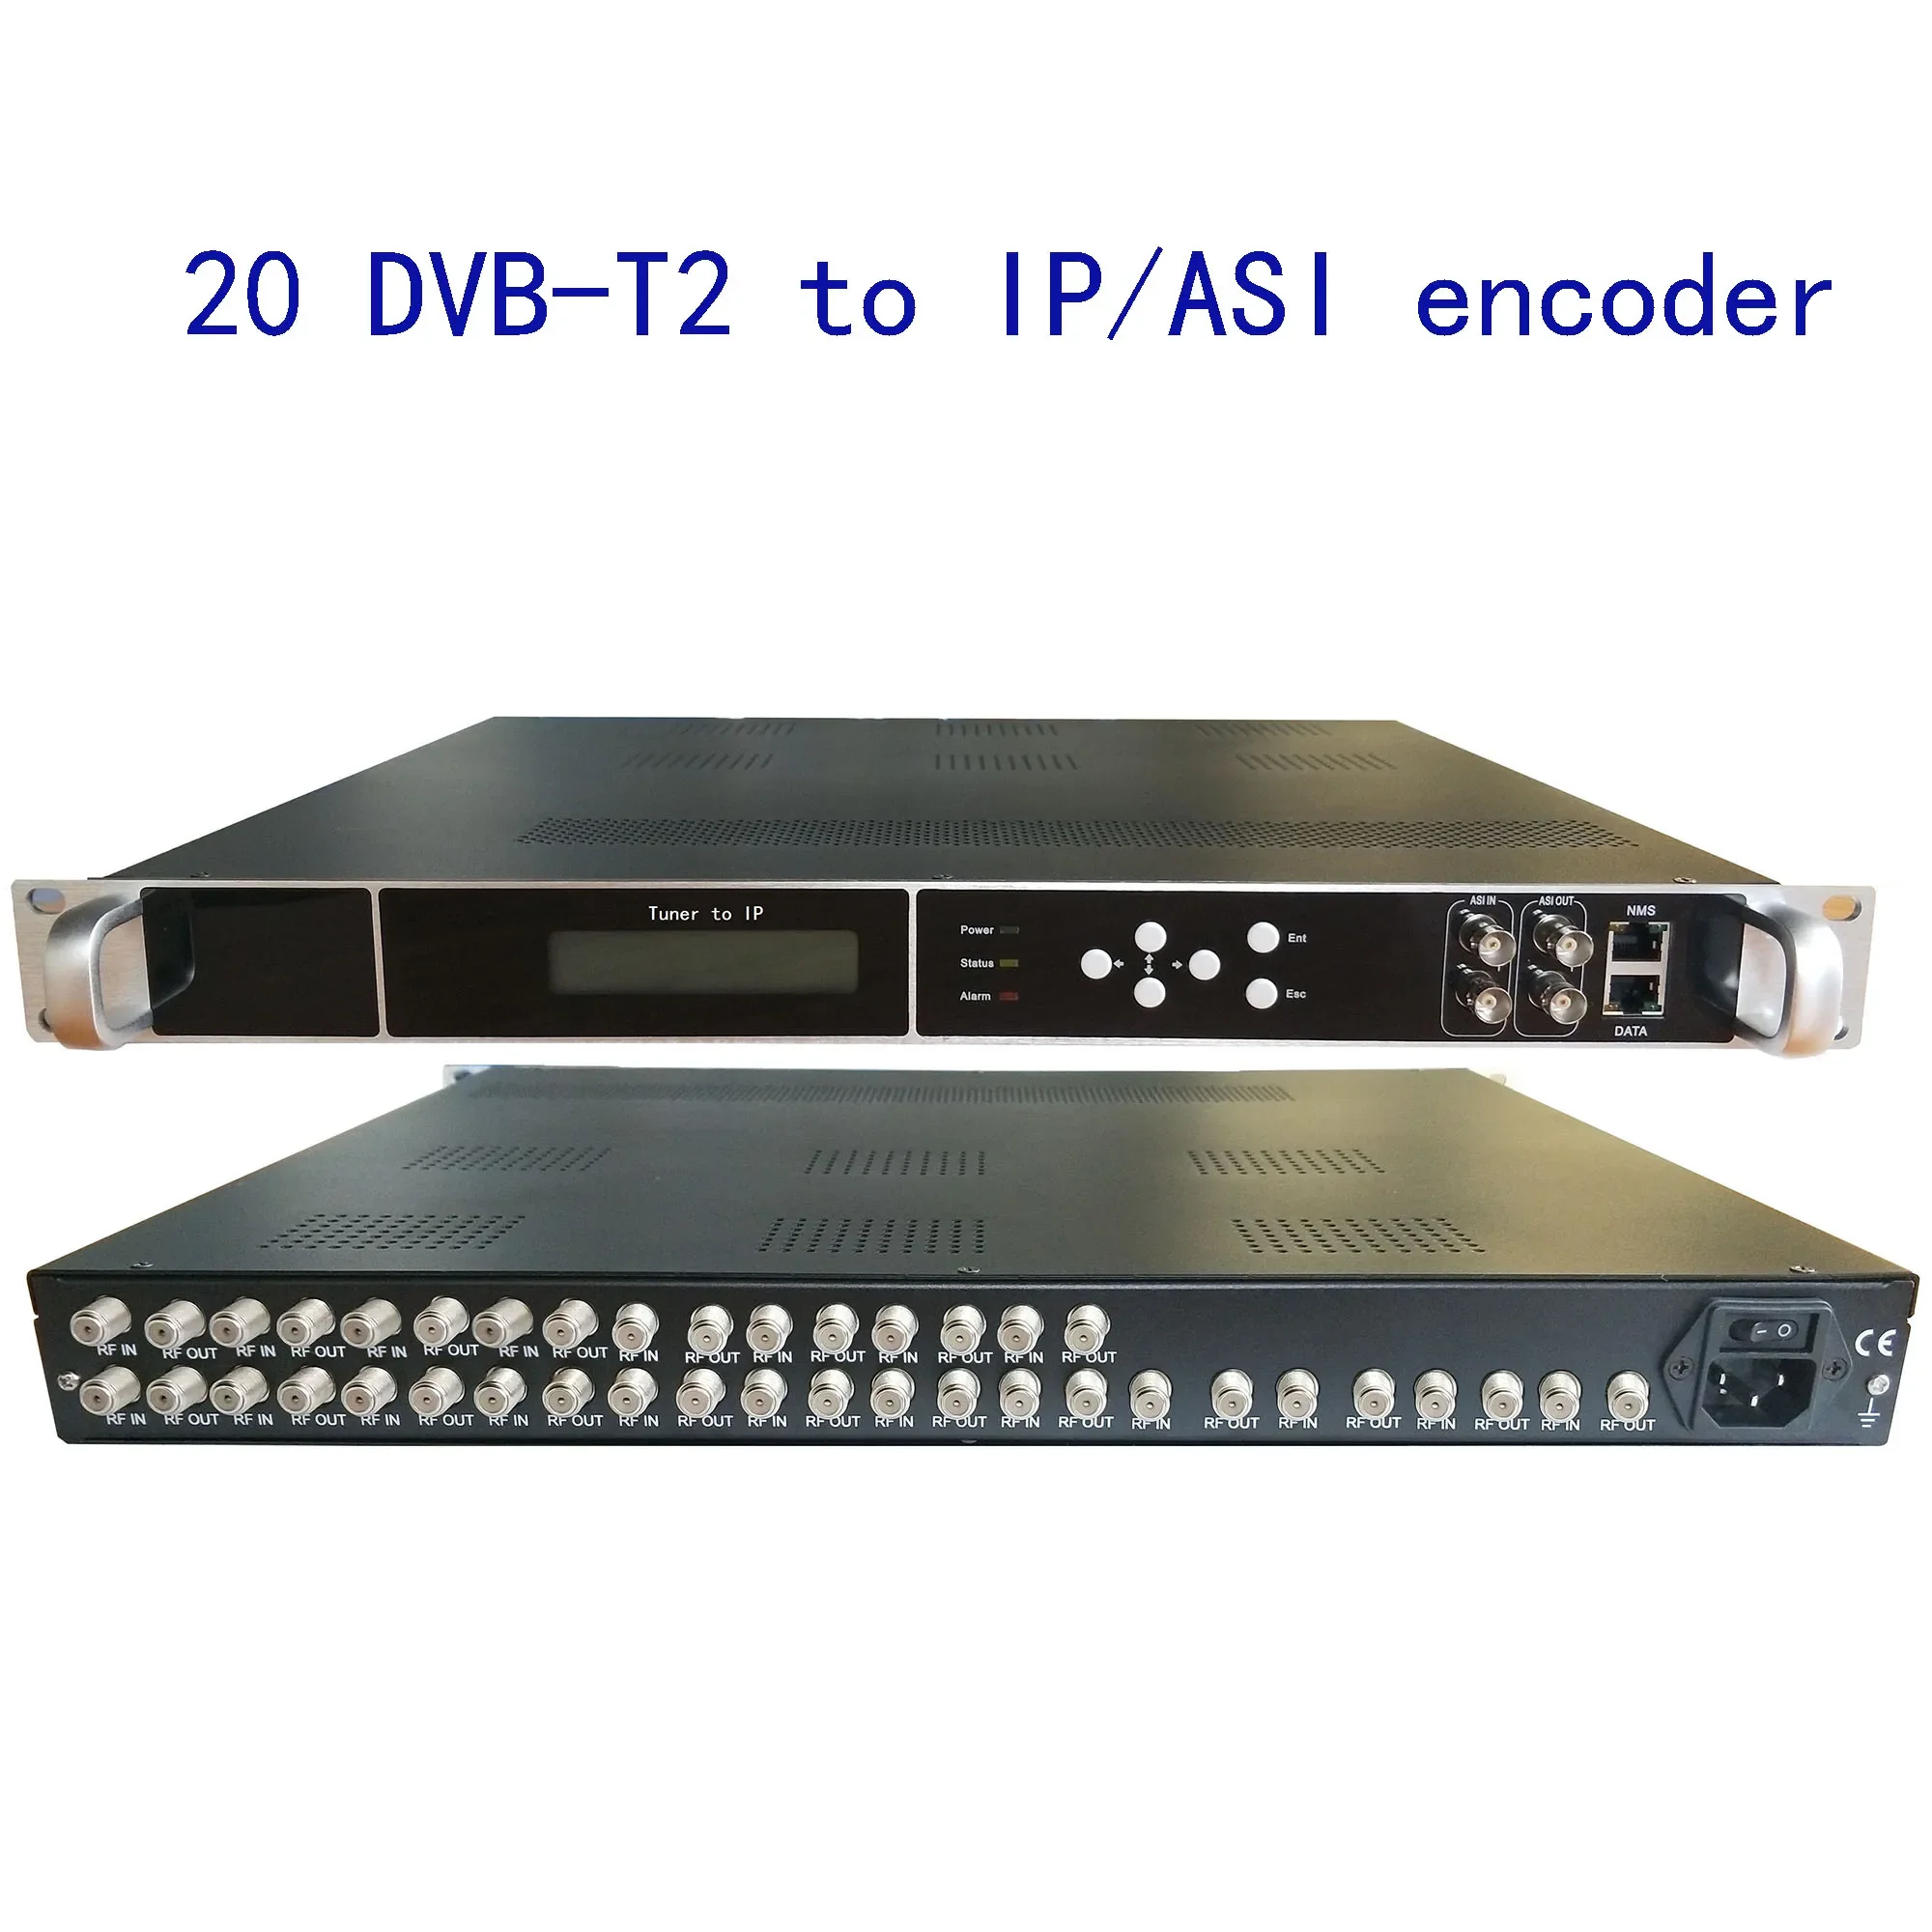 20 преобразователей DVB-T2 в IP/ASI, DVB-T/C в IP/ASI, DVB-T2 в 8 несущих радиочастотного модулятора, цифровой CATV-кодер